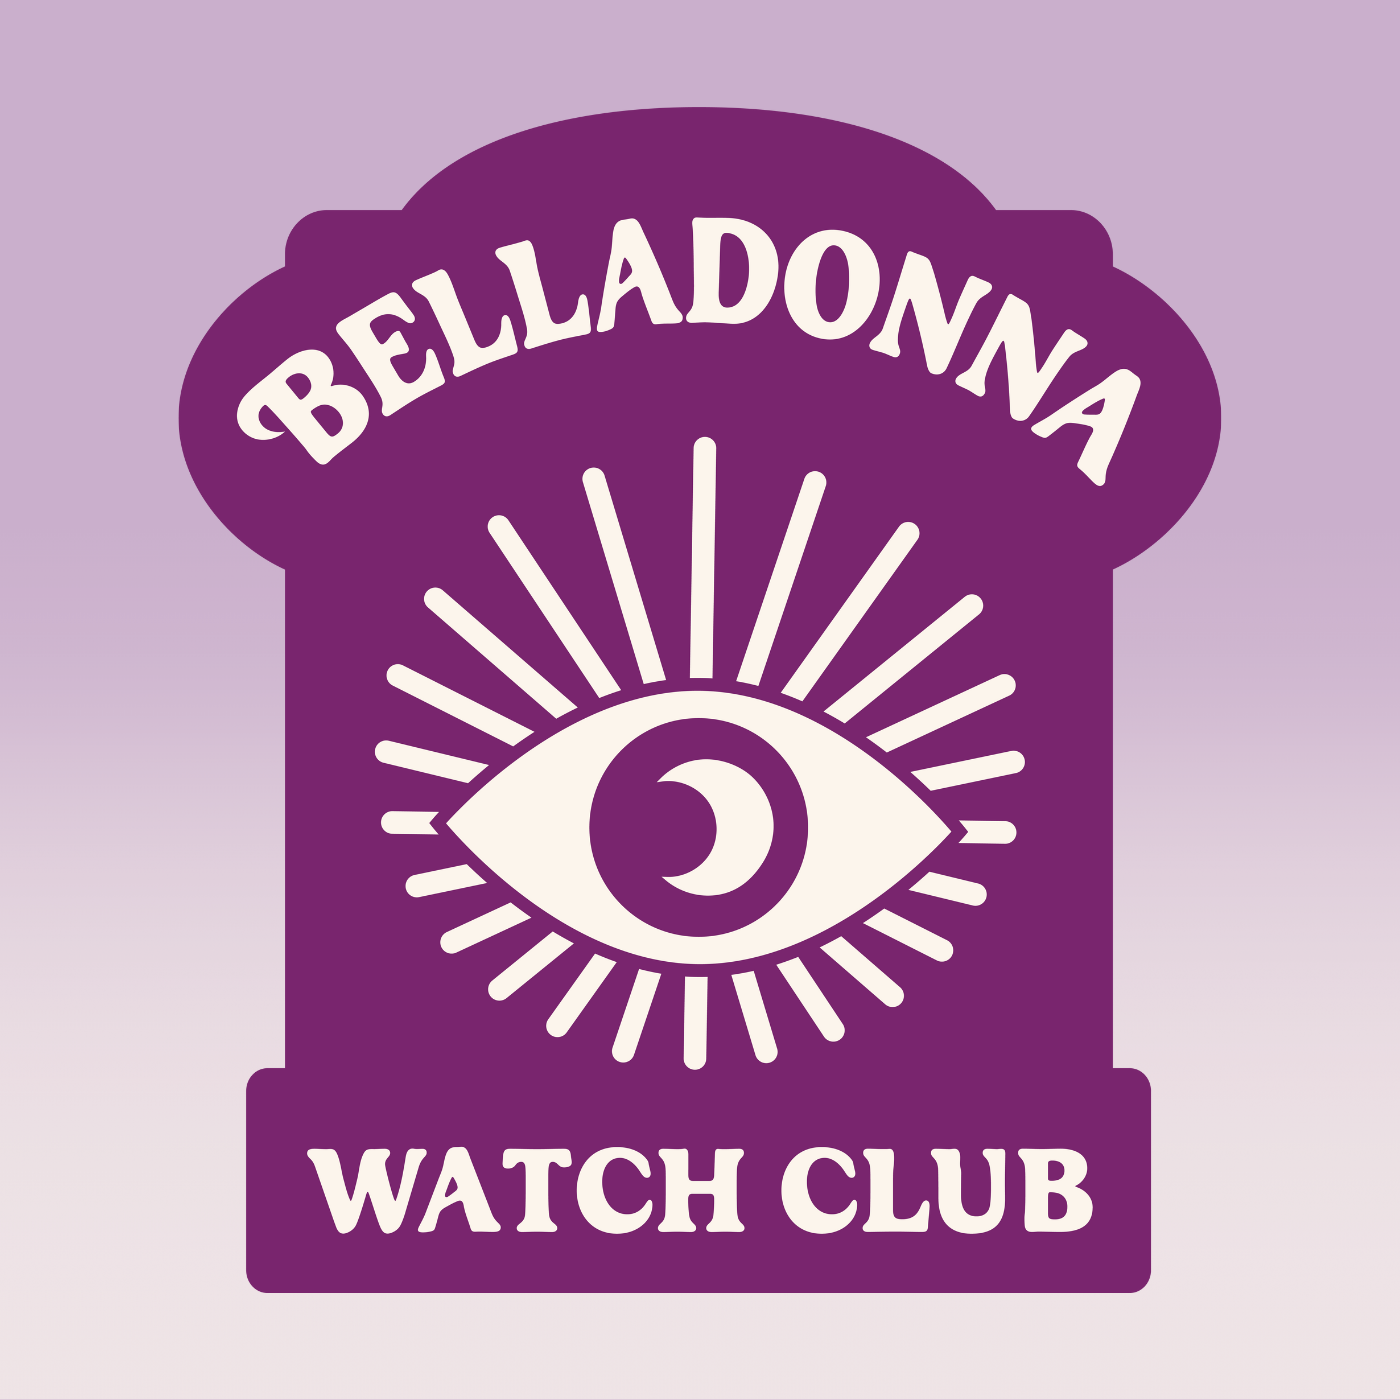 Belladonna Watch Club